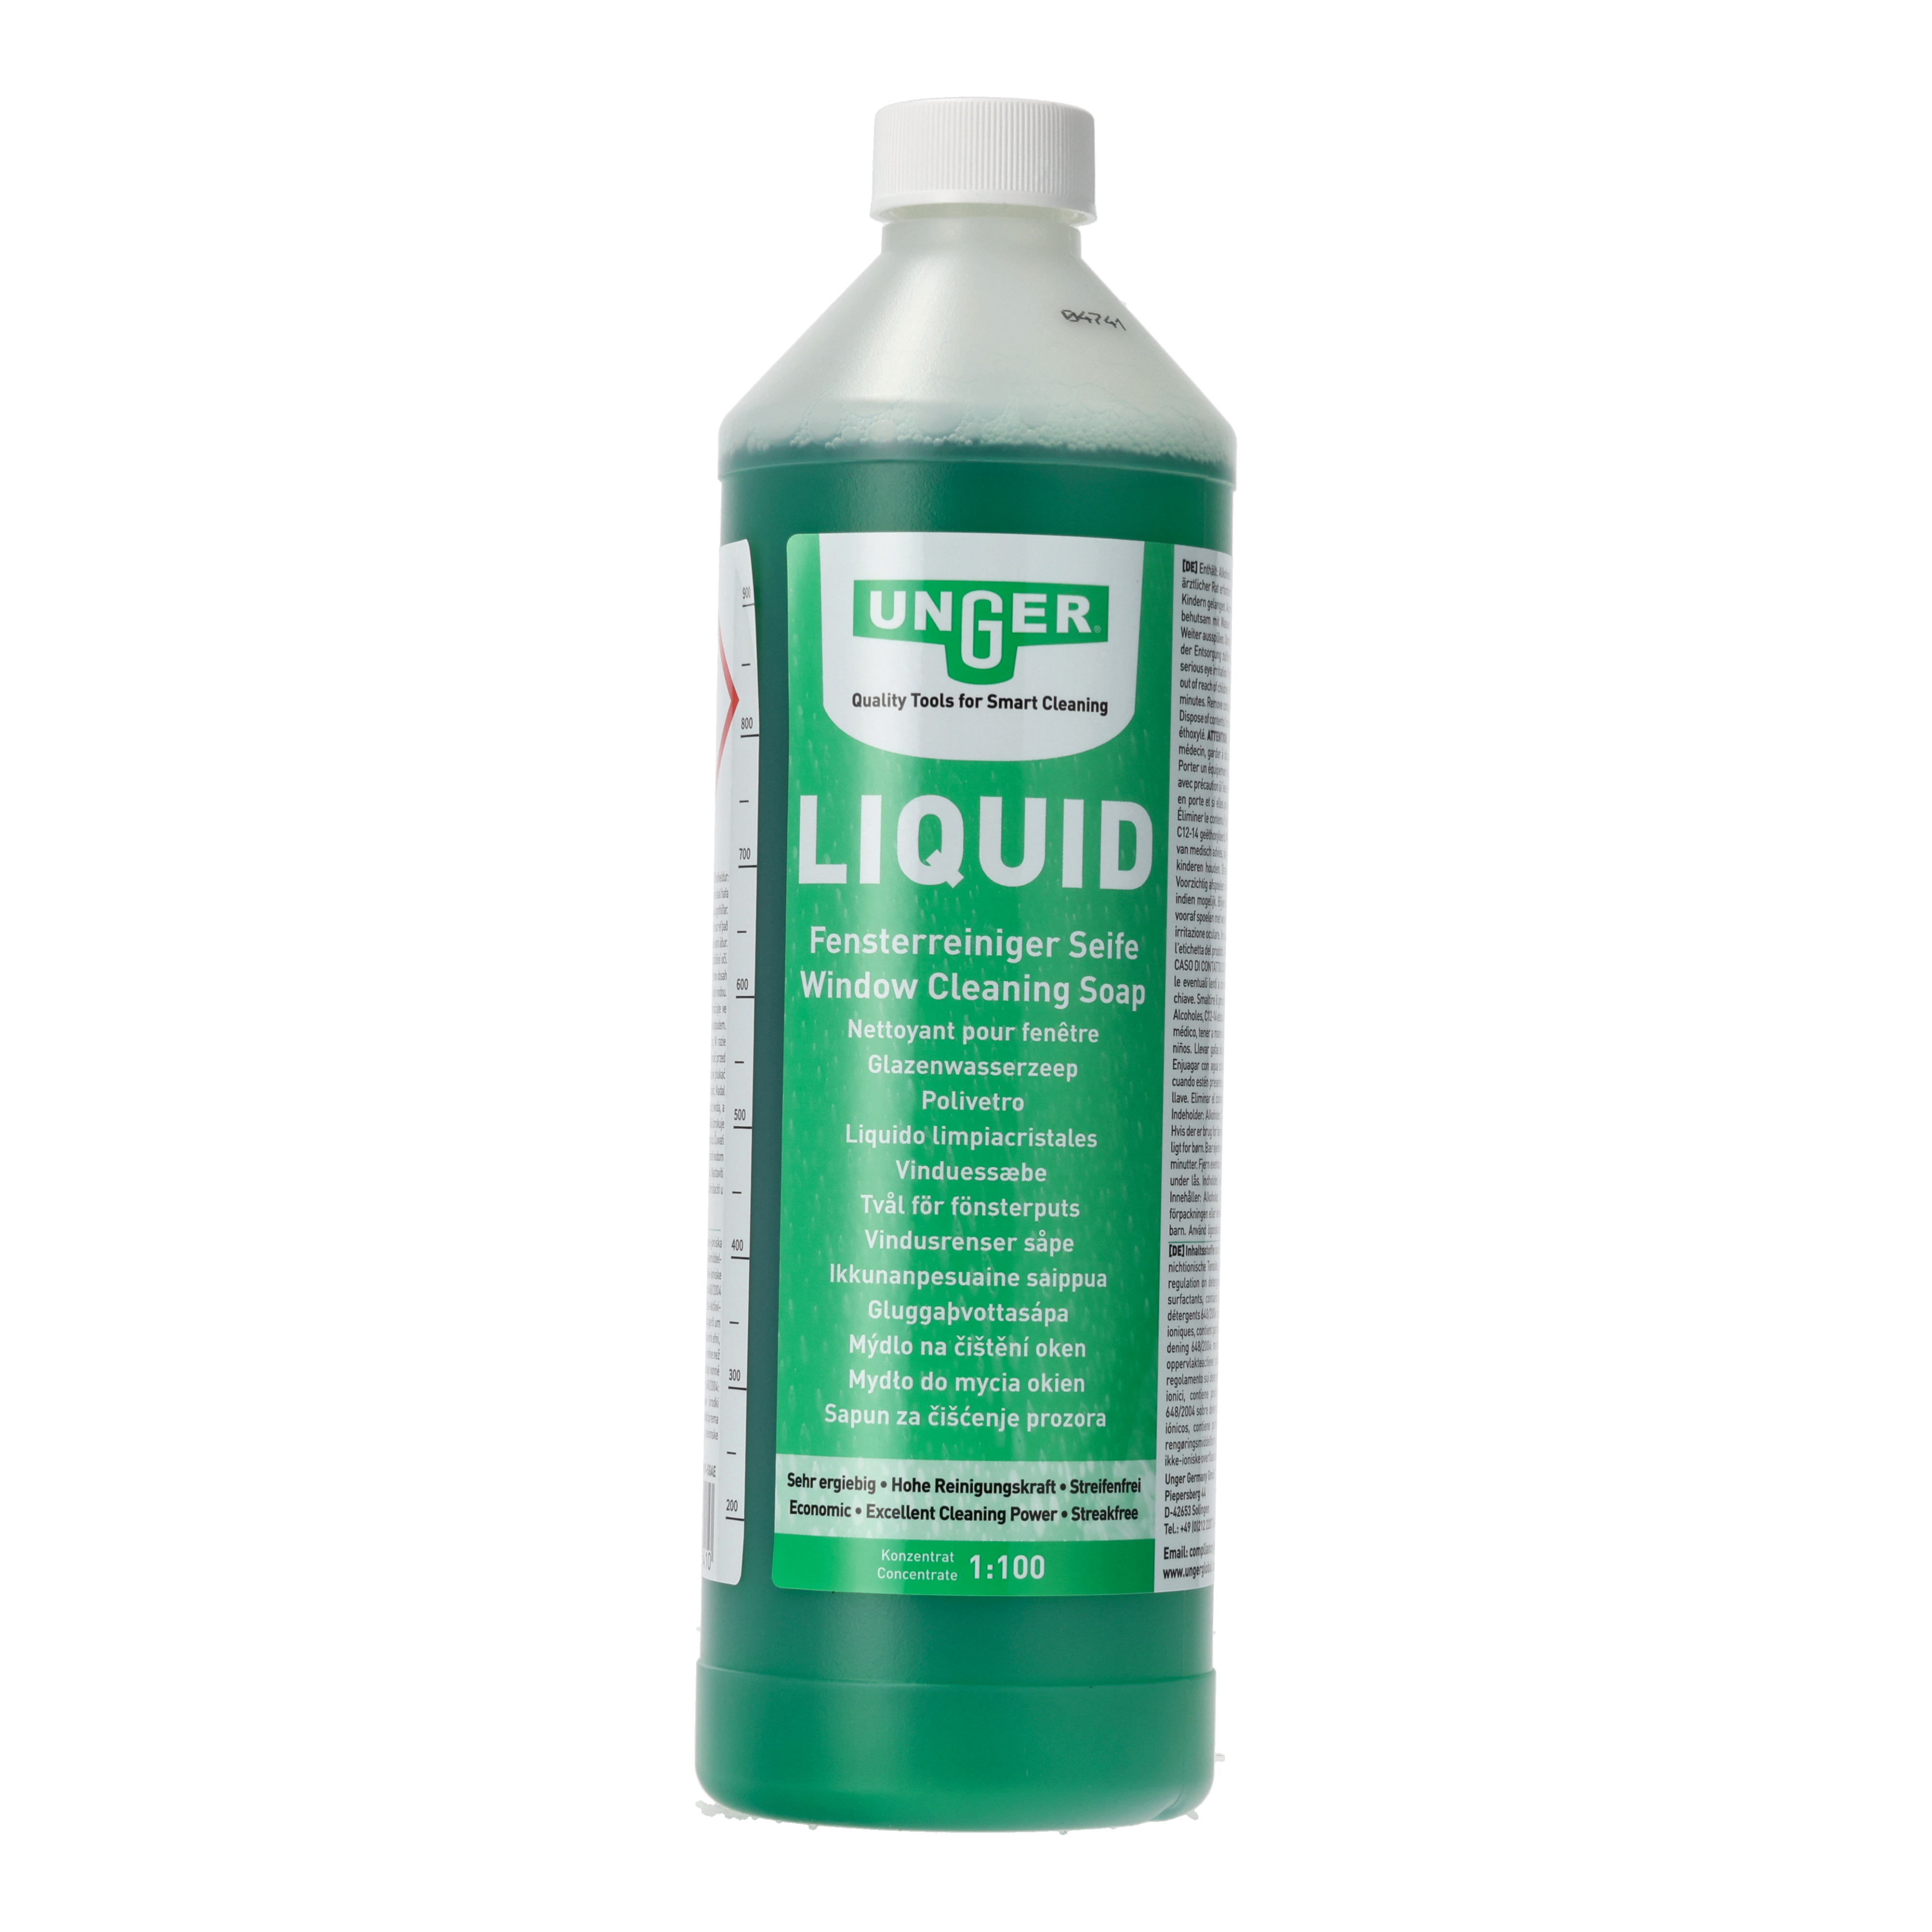 Unger Liquid Fensterreinigungsseife - 1 Liter